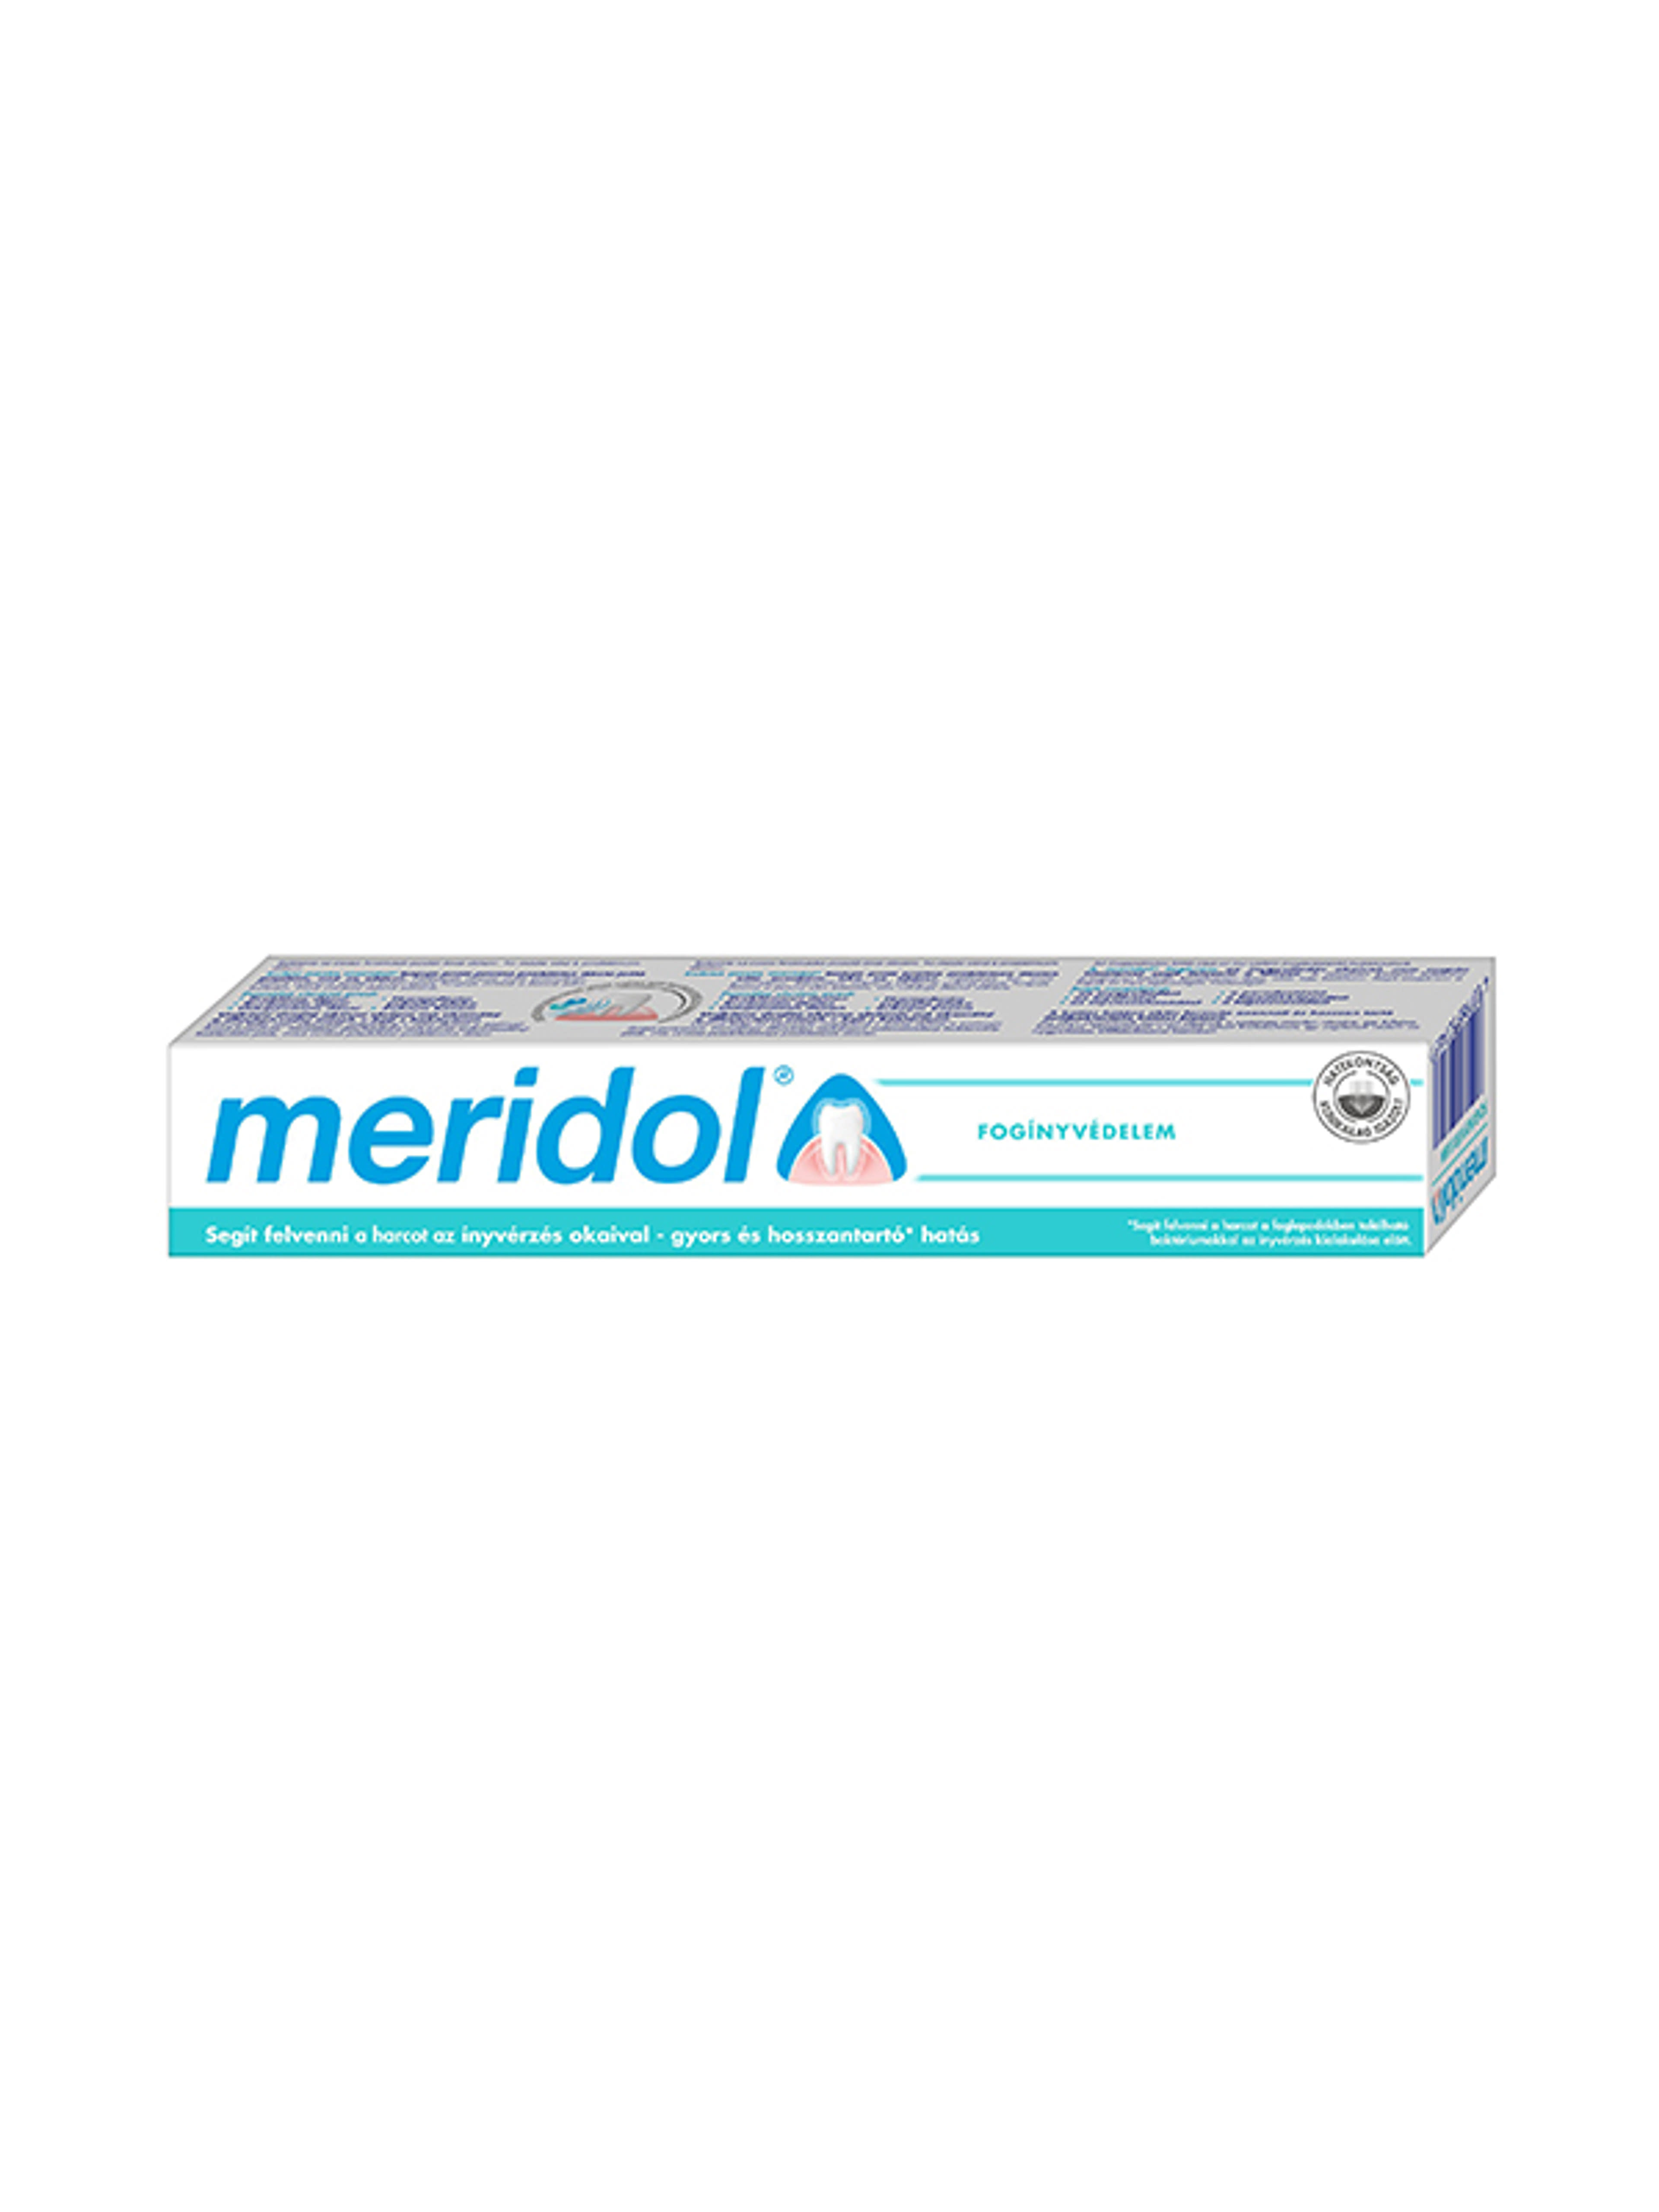 Meridol Fogínyvédelem fogkrém - 75 ml-9